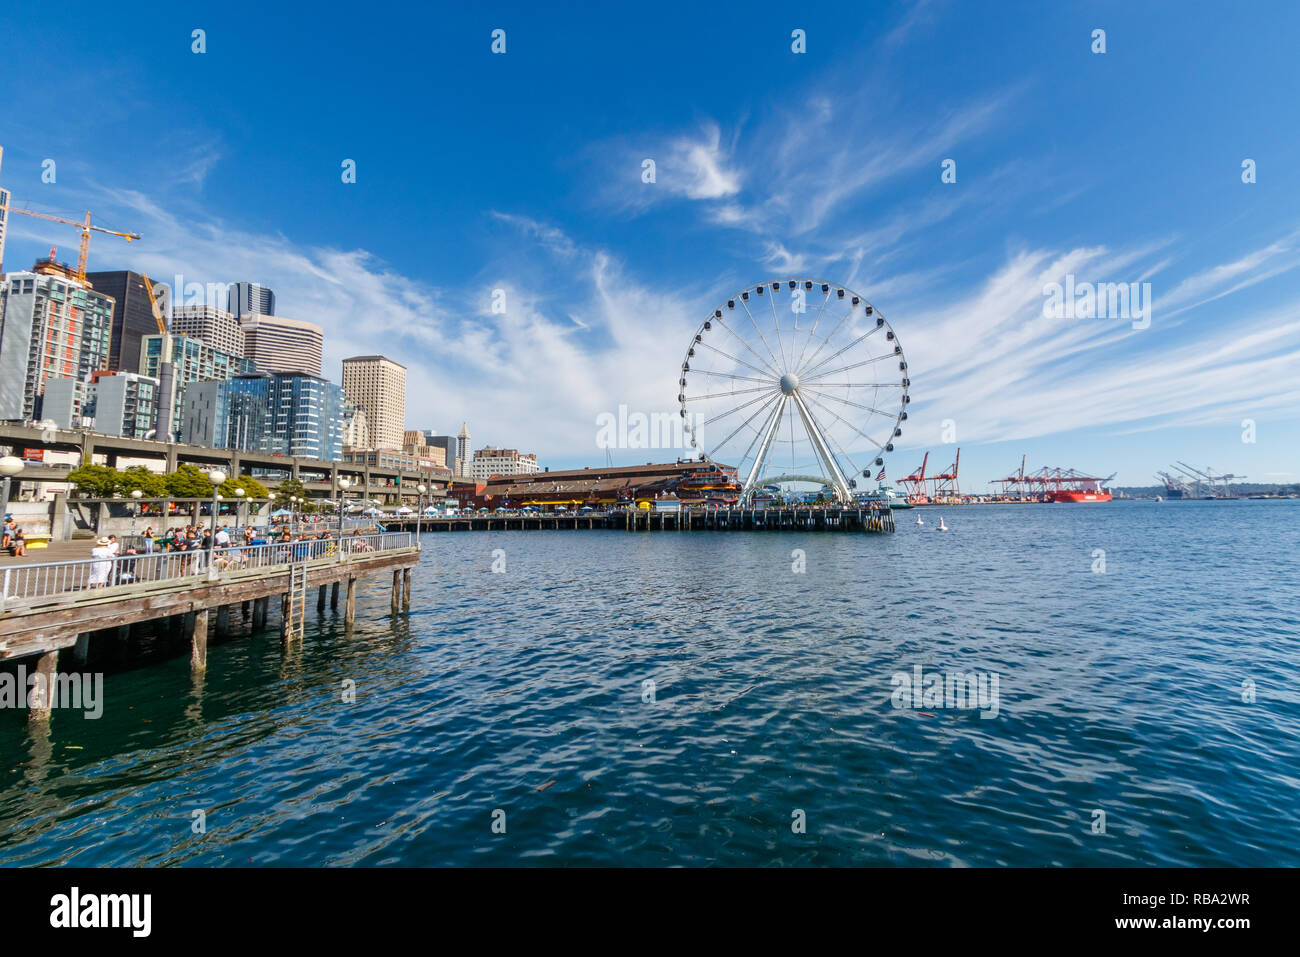 SEATTLE, WA, USA - 21 juillet : grande roue de Seattle au quai 57 le 24 juillet 2018 à Seattle, Washington. Banque D'Images